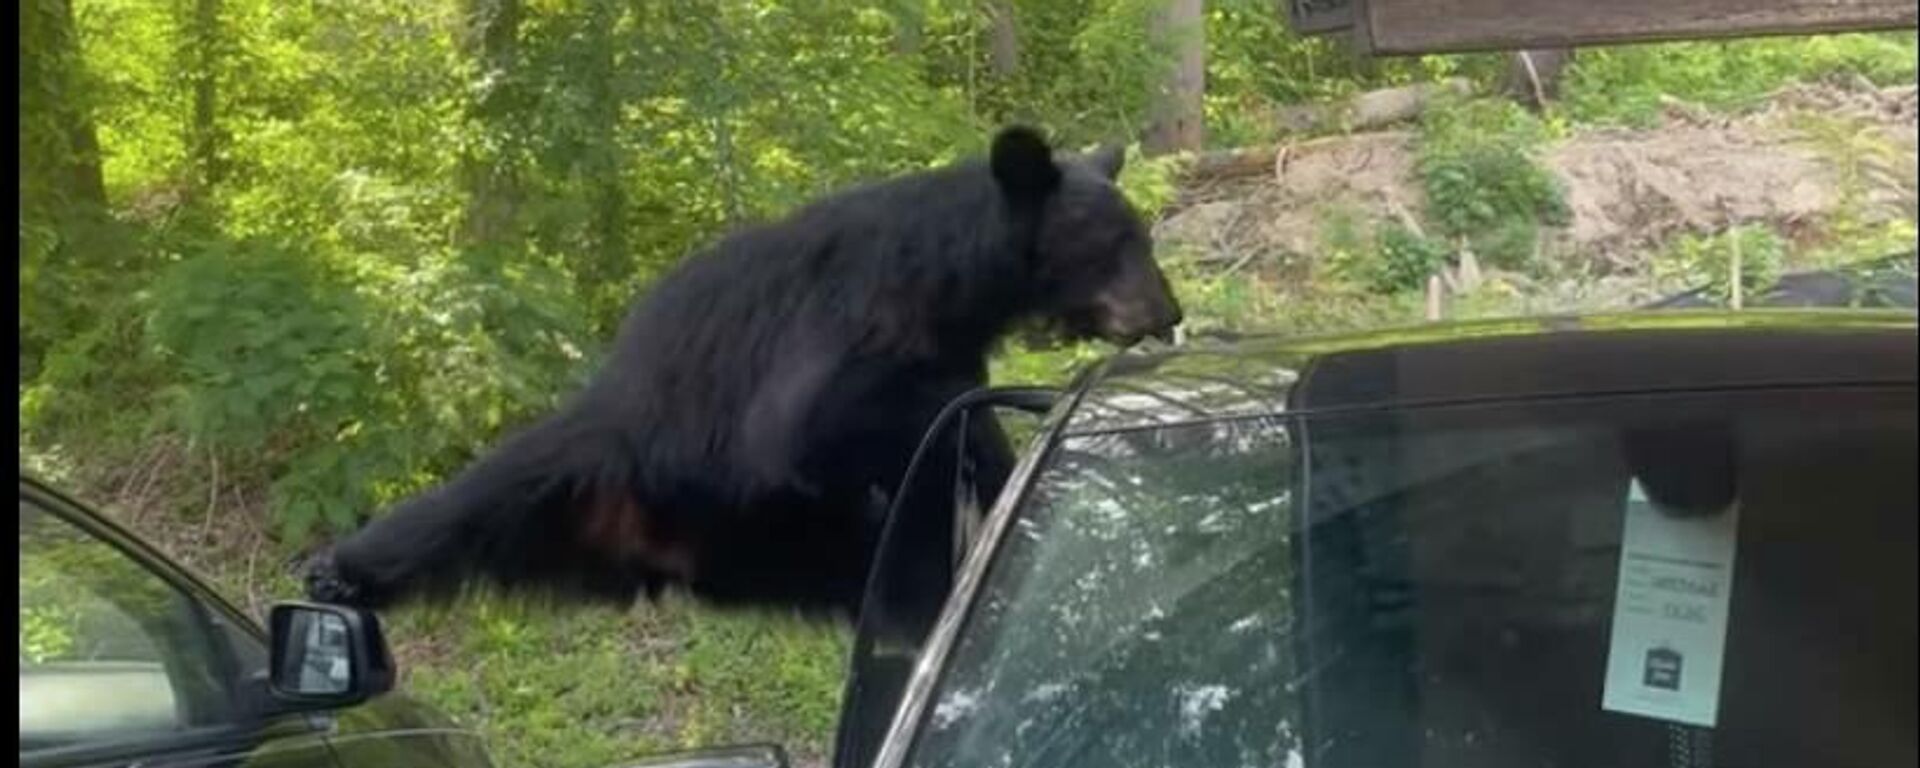 Медведь ломает дверь машины в поисках еды  - видео - Sputnik Казахстан, 1920, 26.06.2022